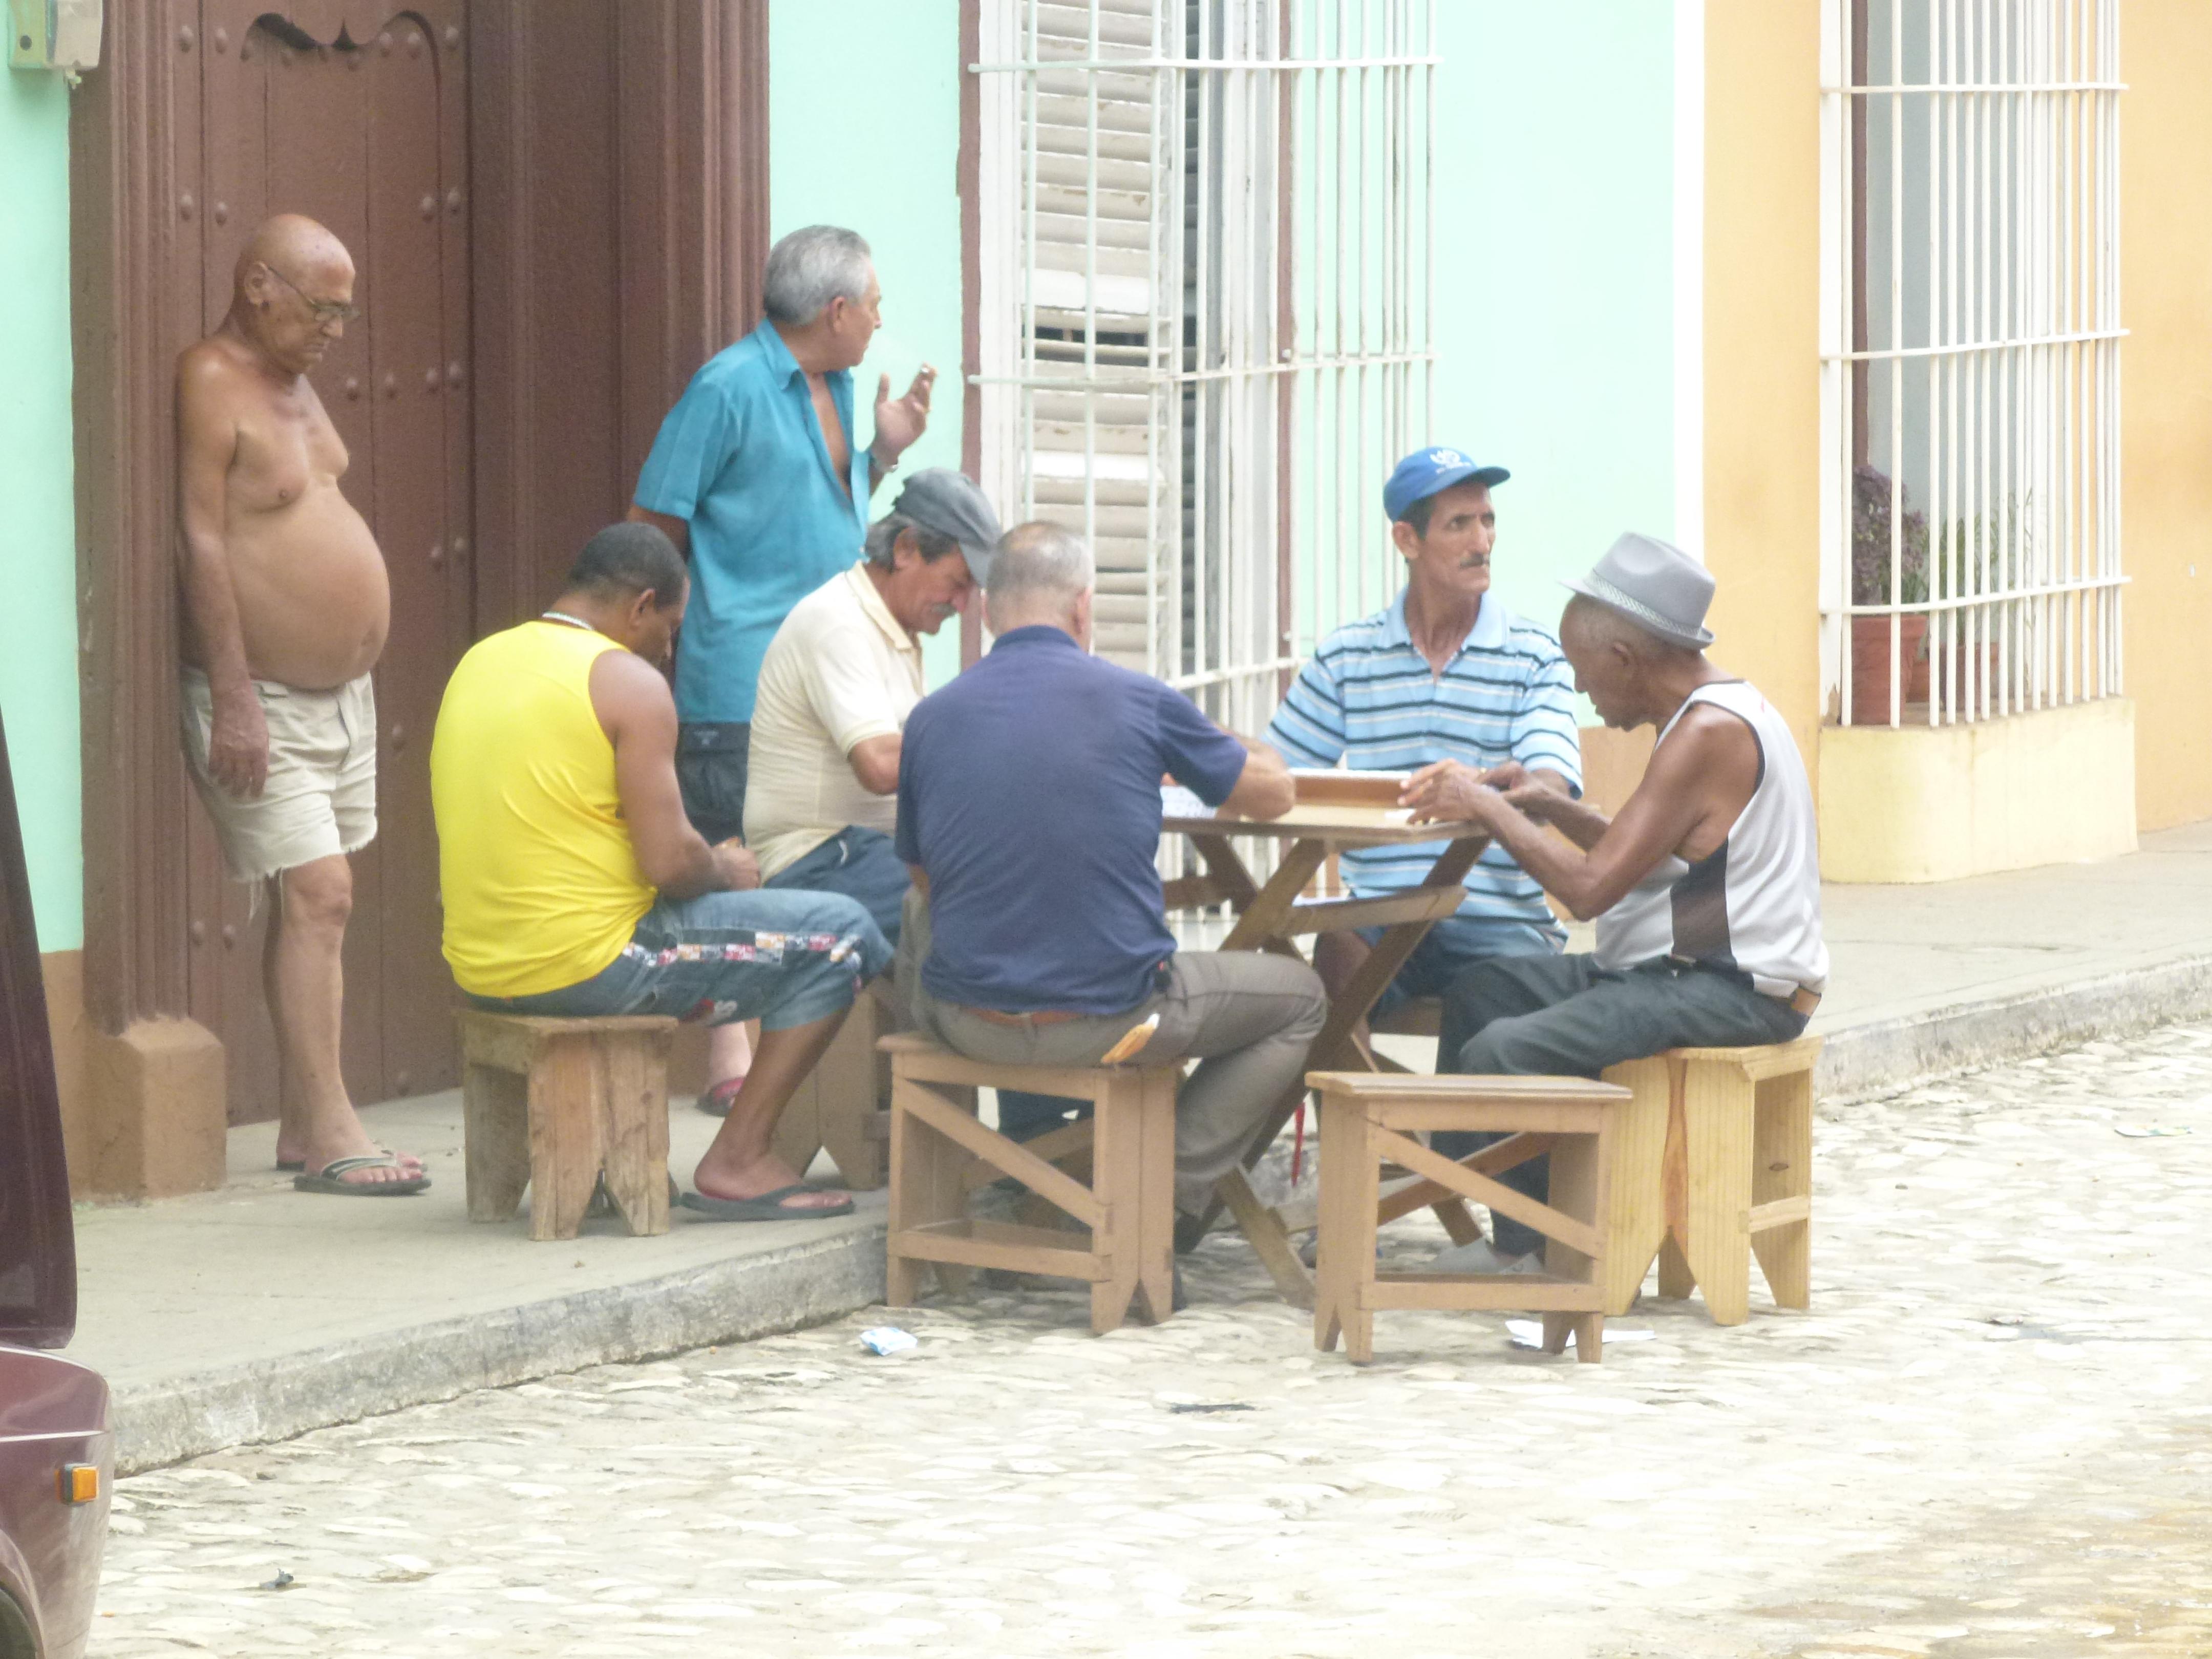 So wird der Vatertag in #Trinidad auf #Cuba genossen! Richtig so, Männer!
#travel #weltreise 